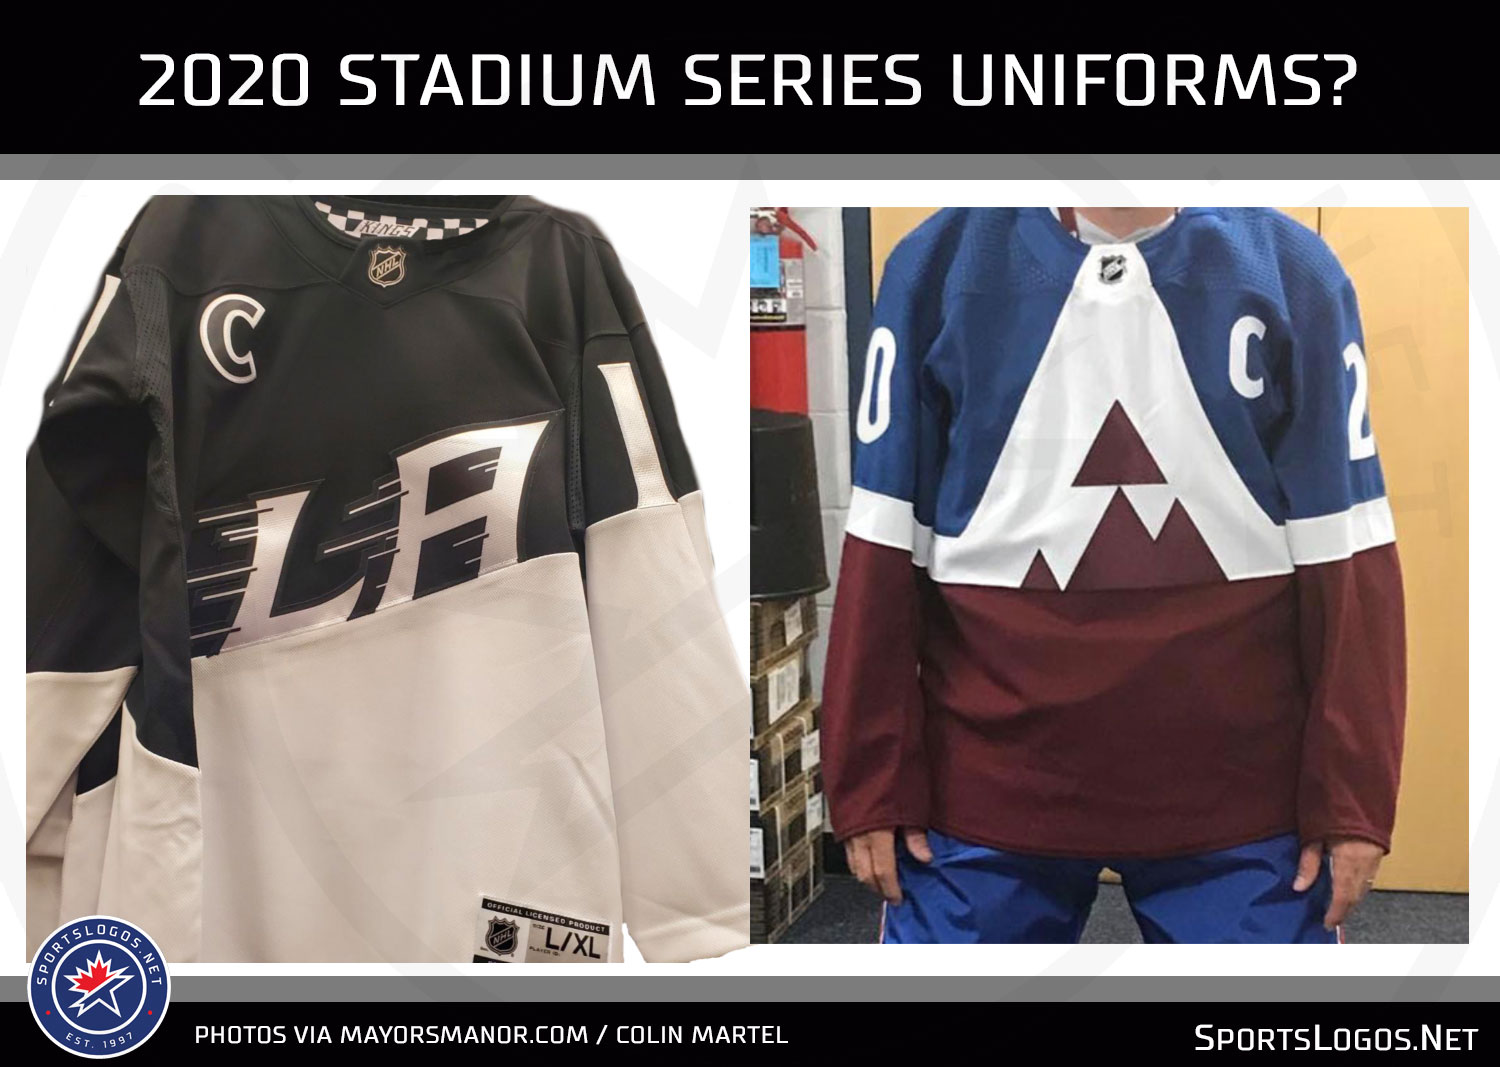  Colorado's 2020 Stadium Series jersey has leaked